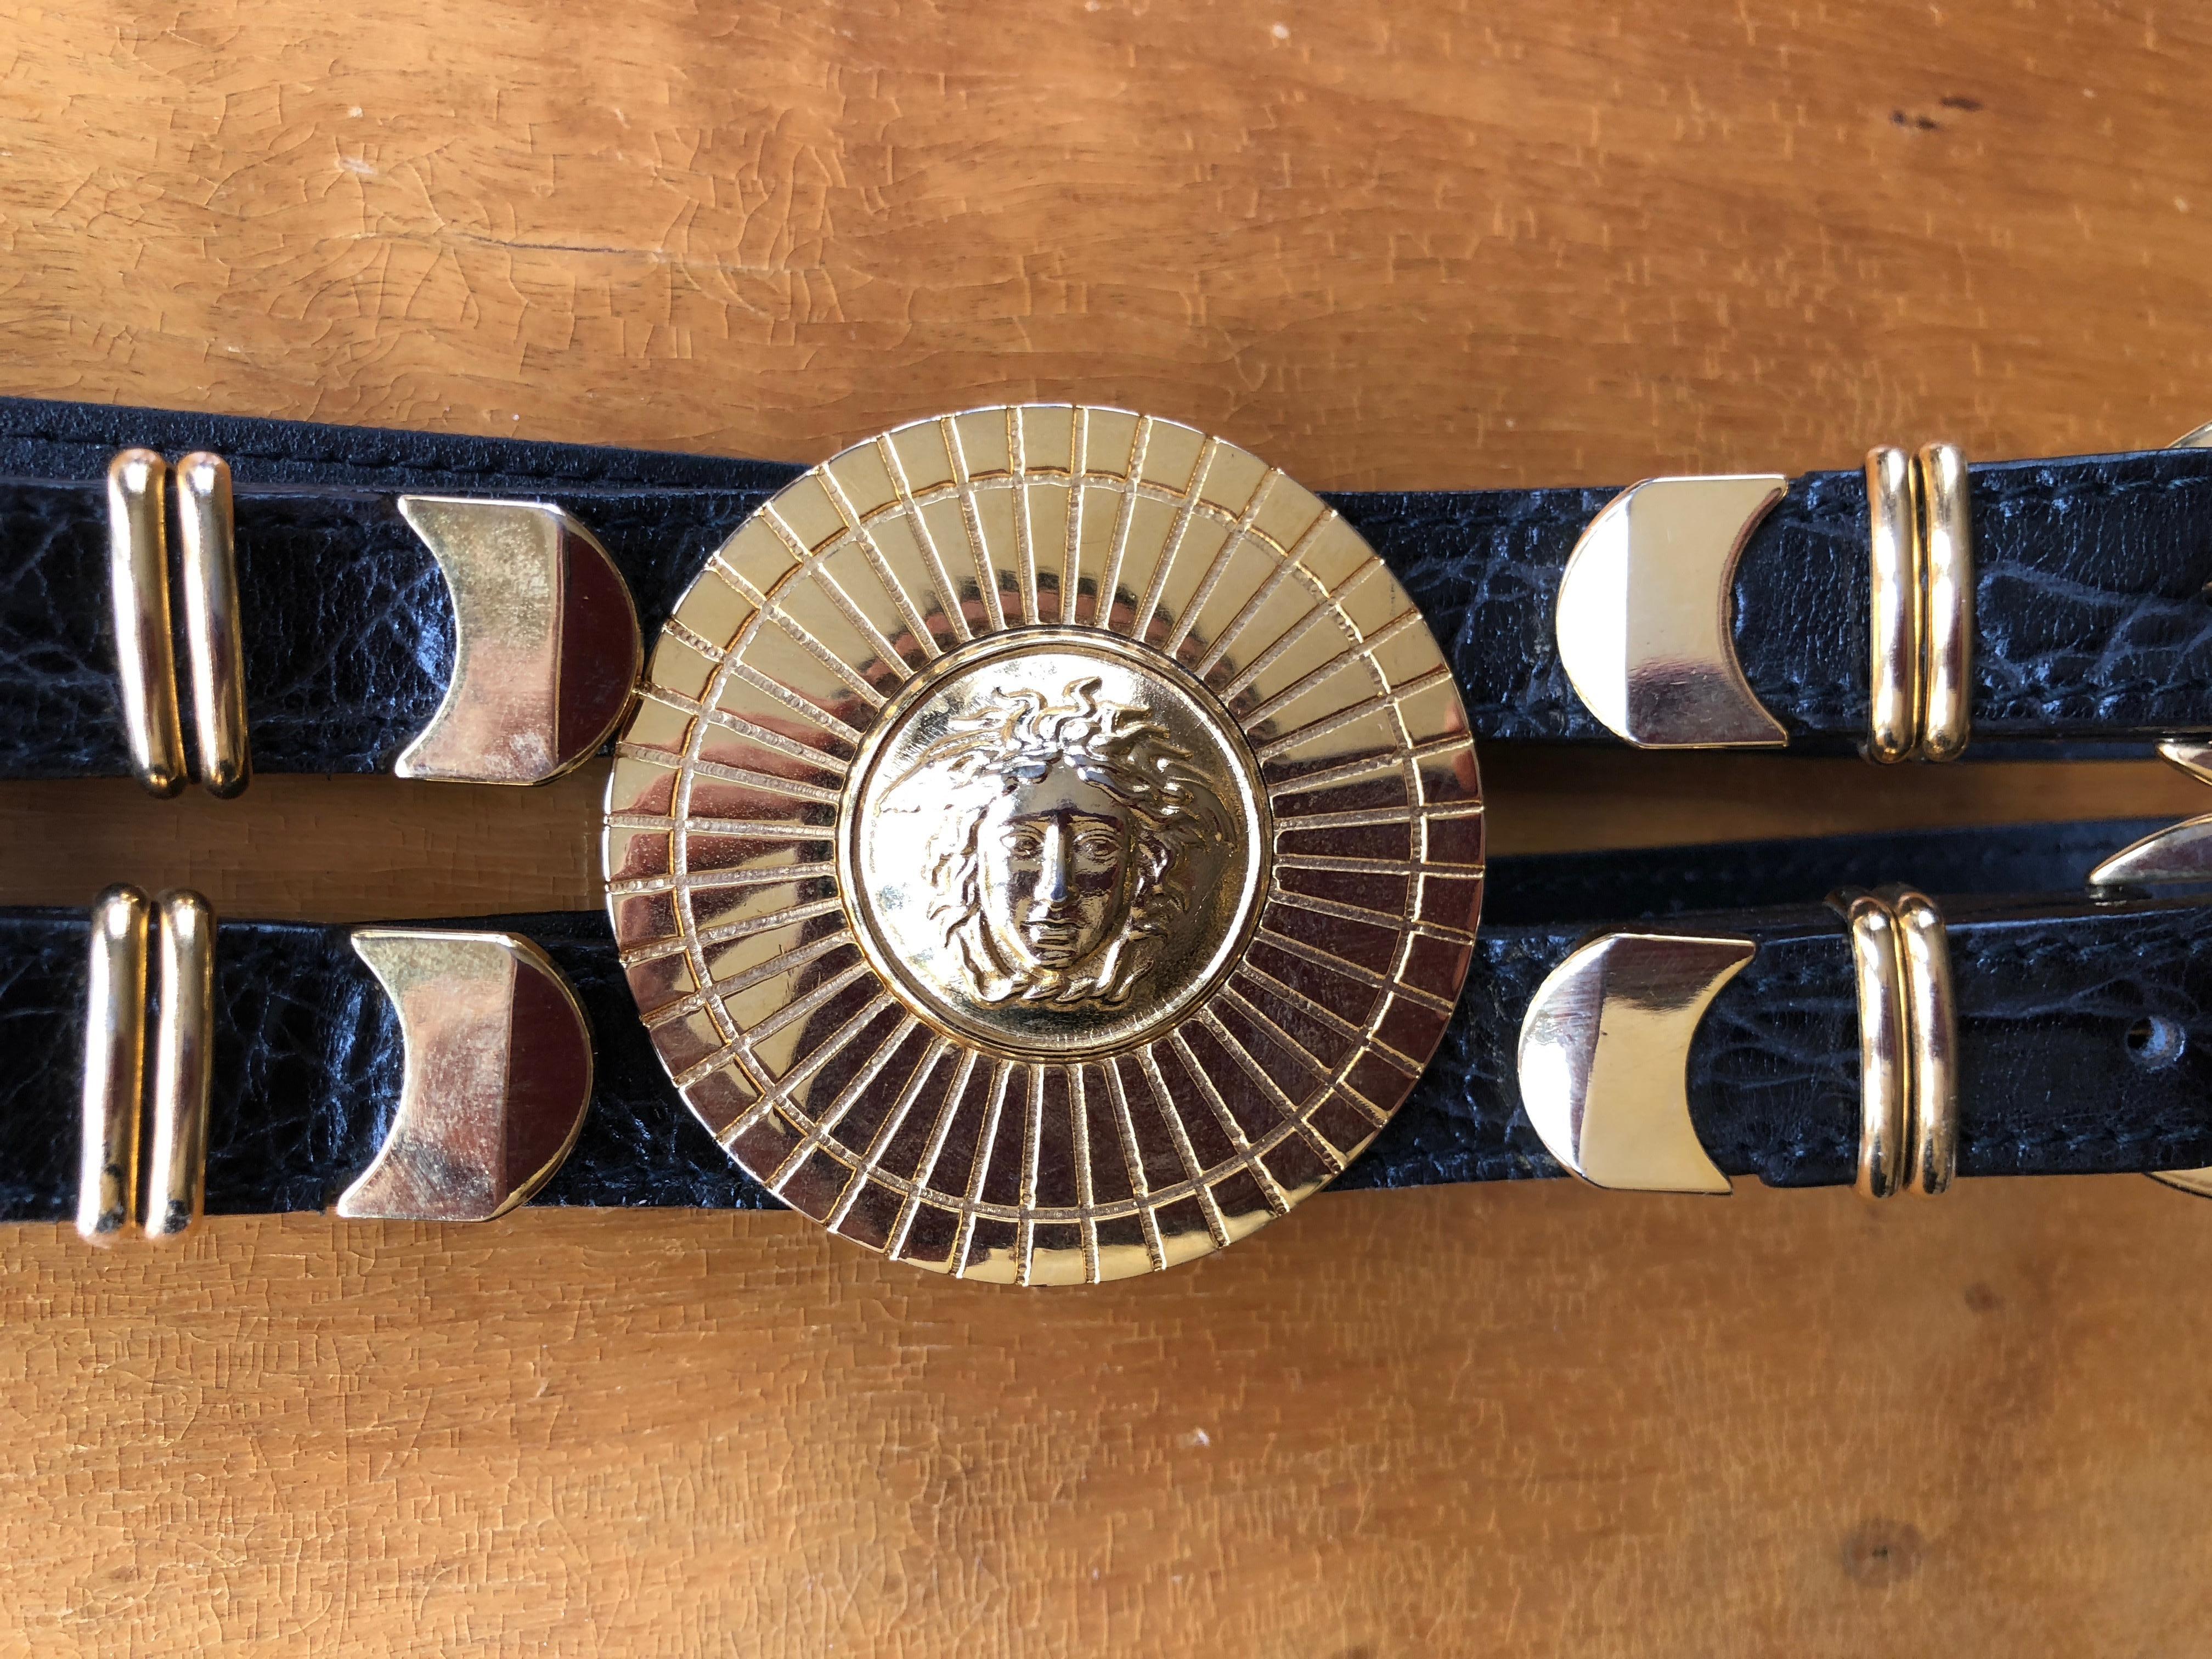 Gianni Versace Rare Vintage Black Alligator Belt with 3 Bold Gold Medusa Buckles 6